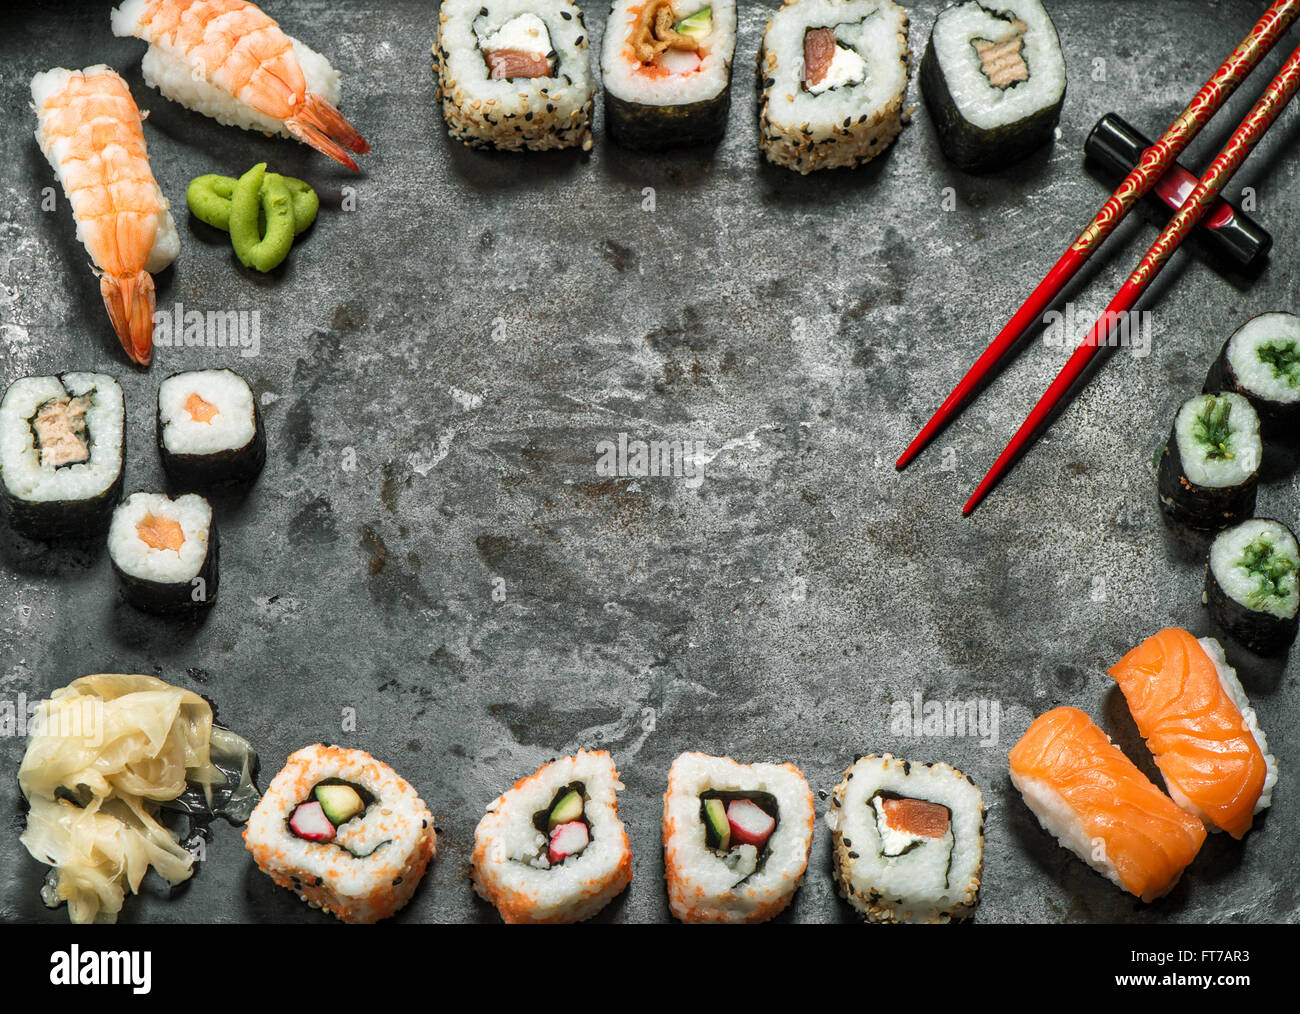 Traditionelles japanisches Essen. Sushi rolls, Nigiri, Lachs, Wasabi, Garnelen, Thunfisch, Ingwer, Tofu, Reis, Avocado, eingelegten Ingwer. Asiatische Stockfoto